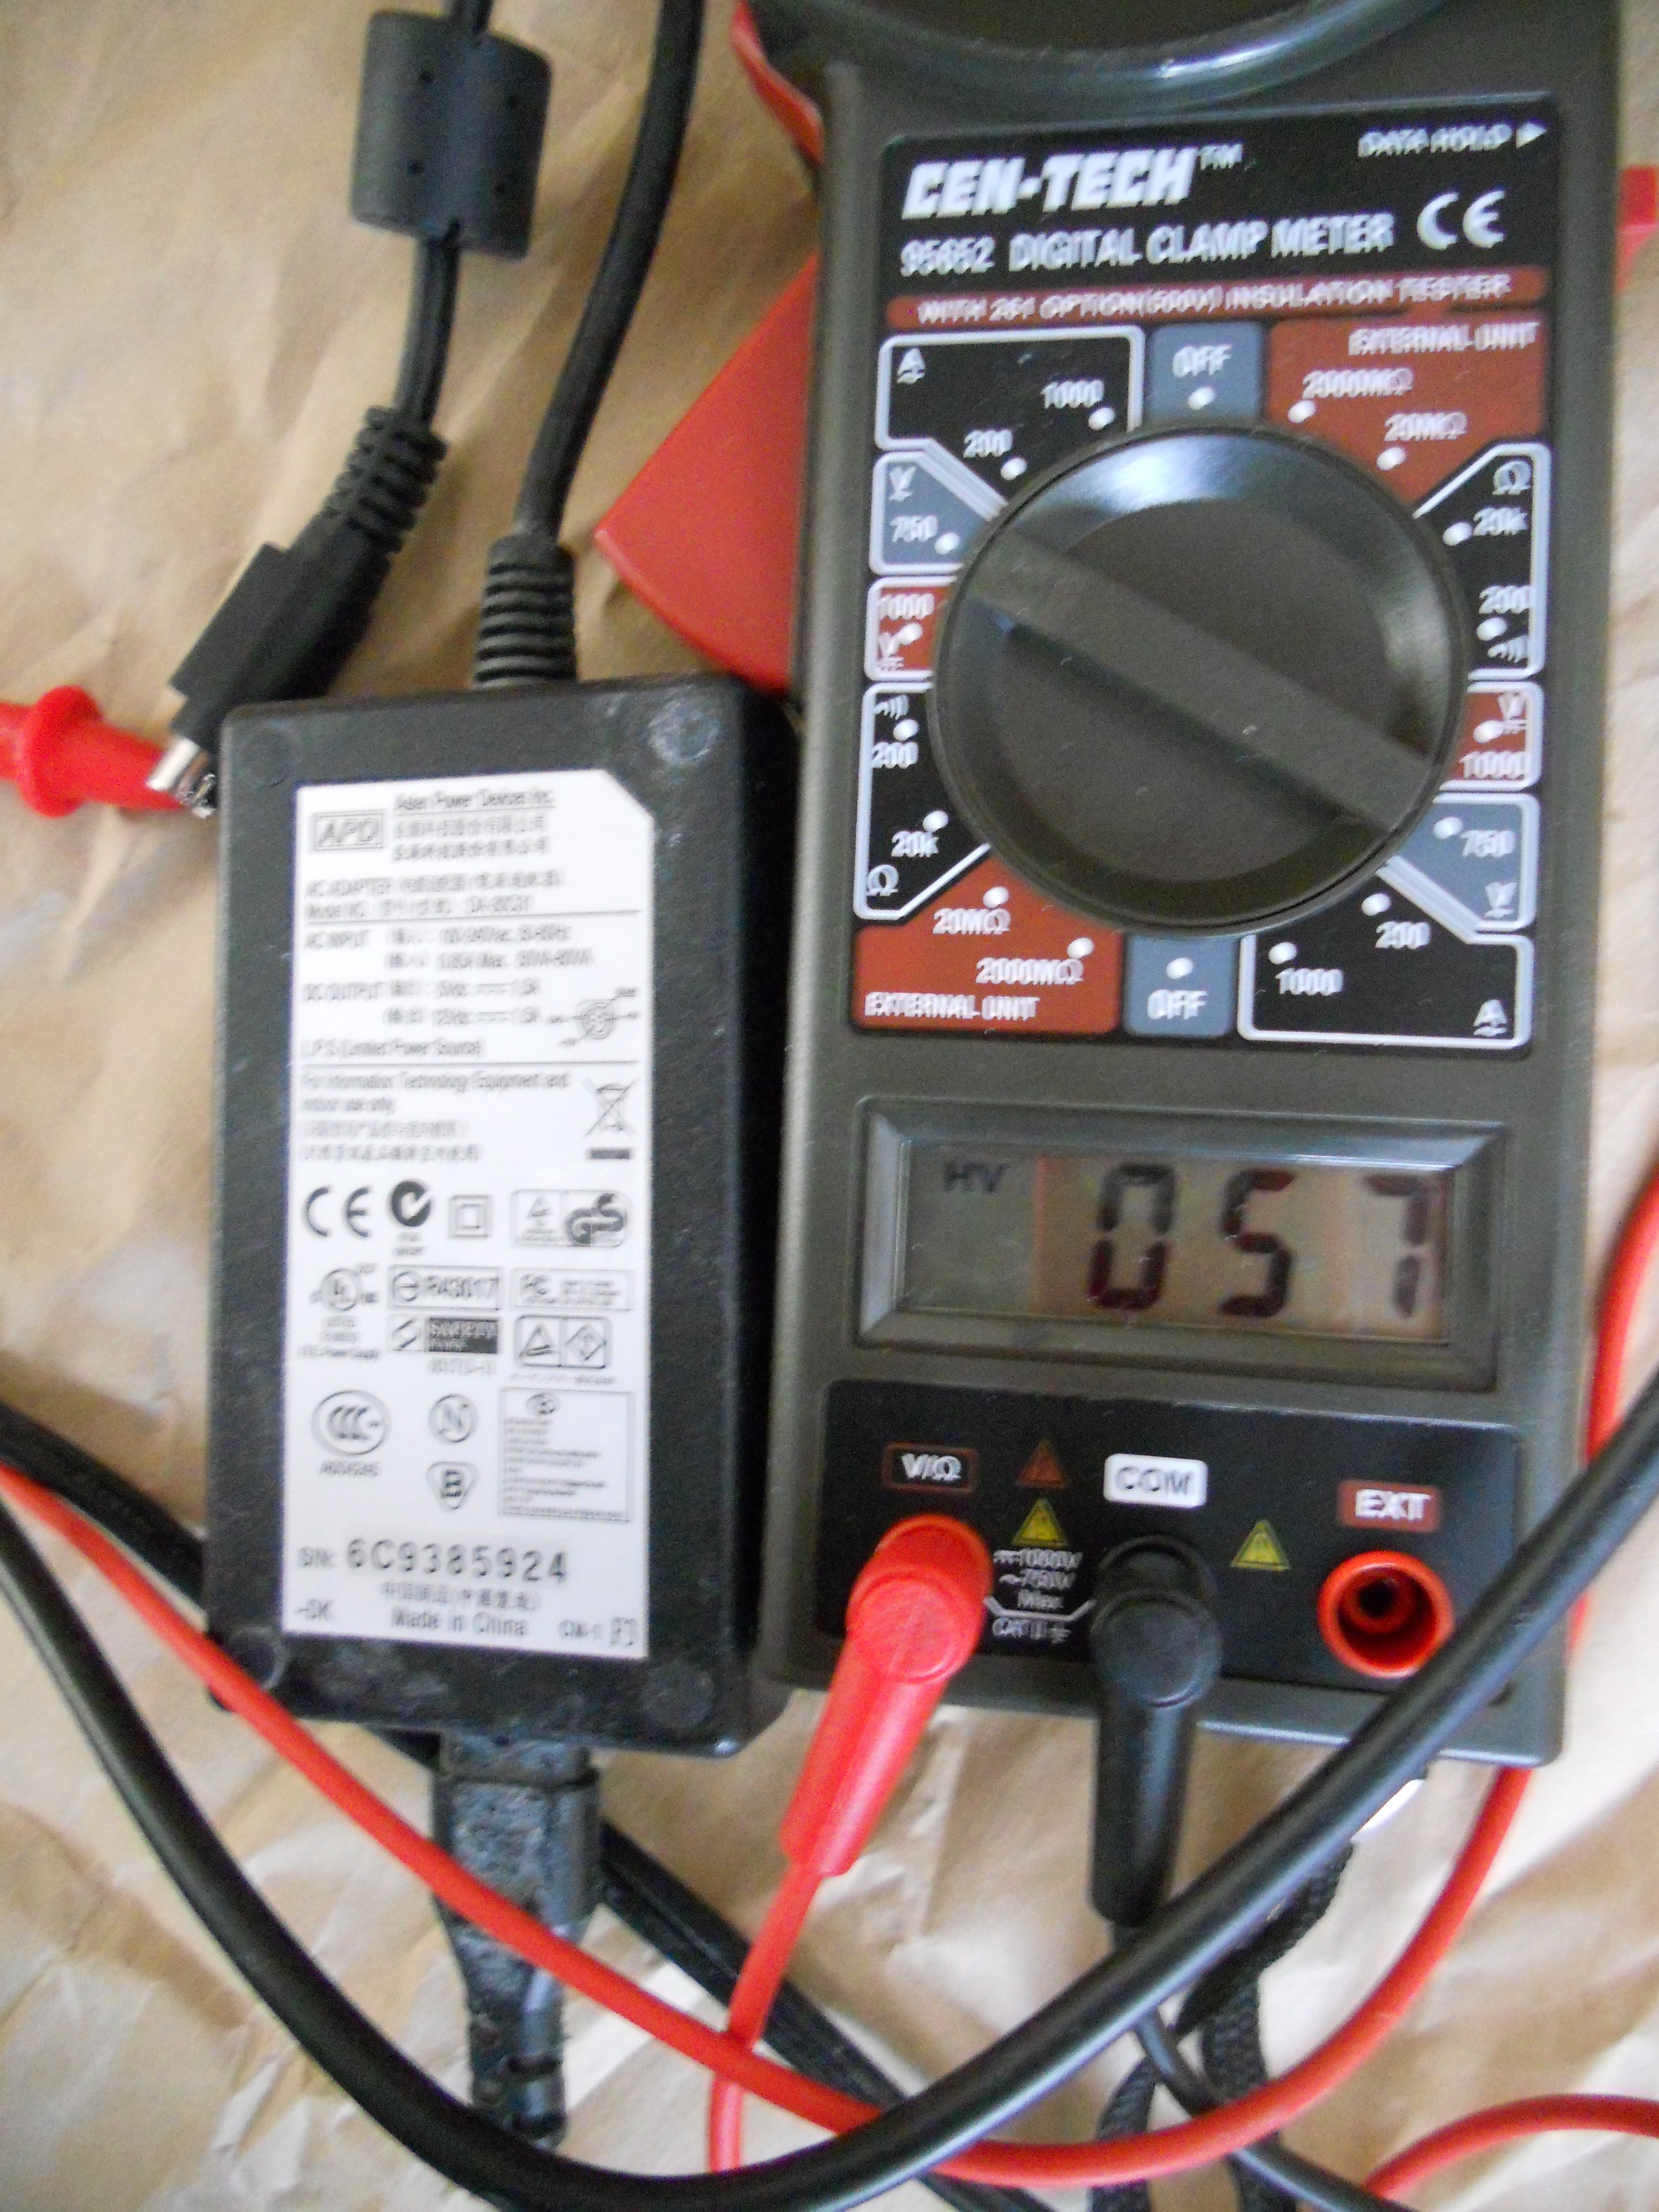 Western Digita Power Supply #2 - 57 volts leakage